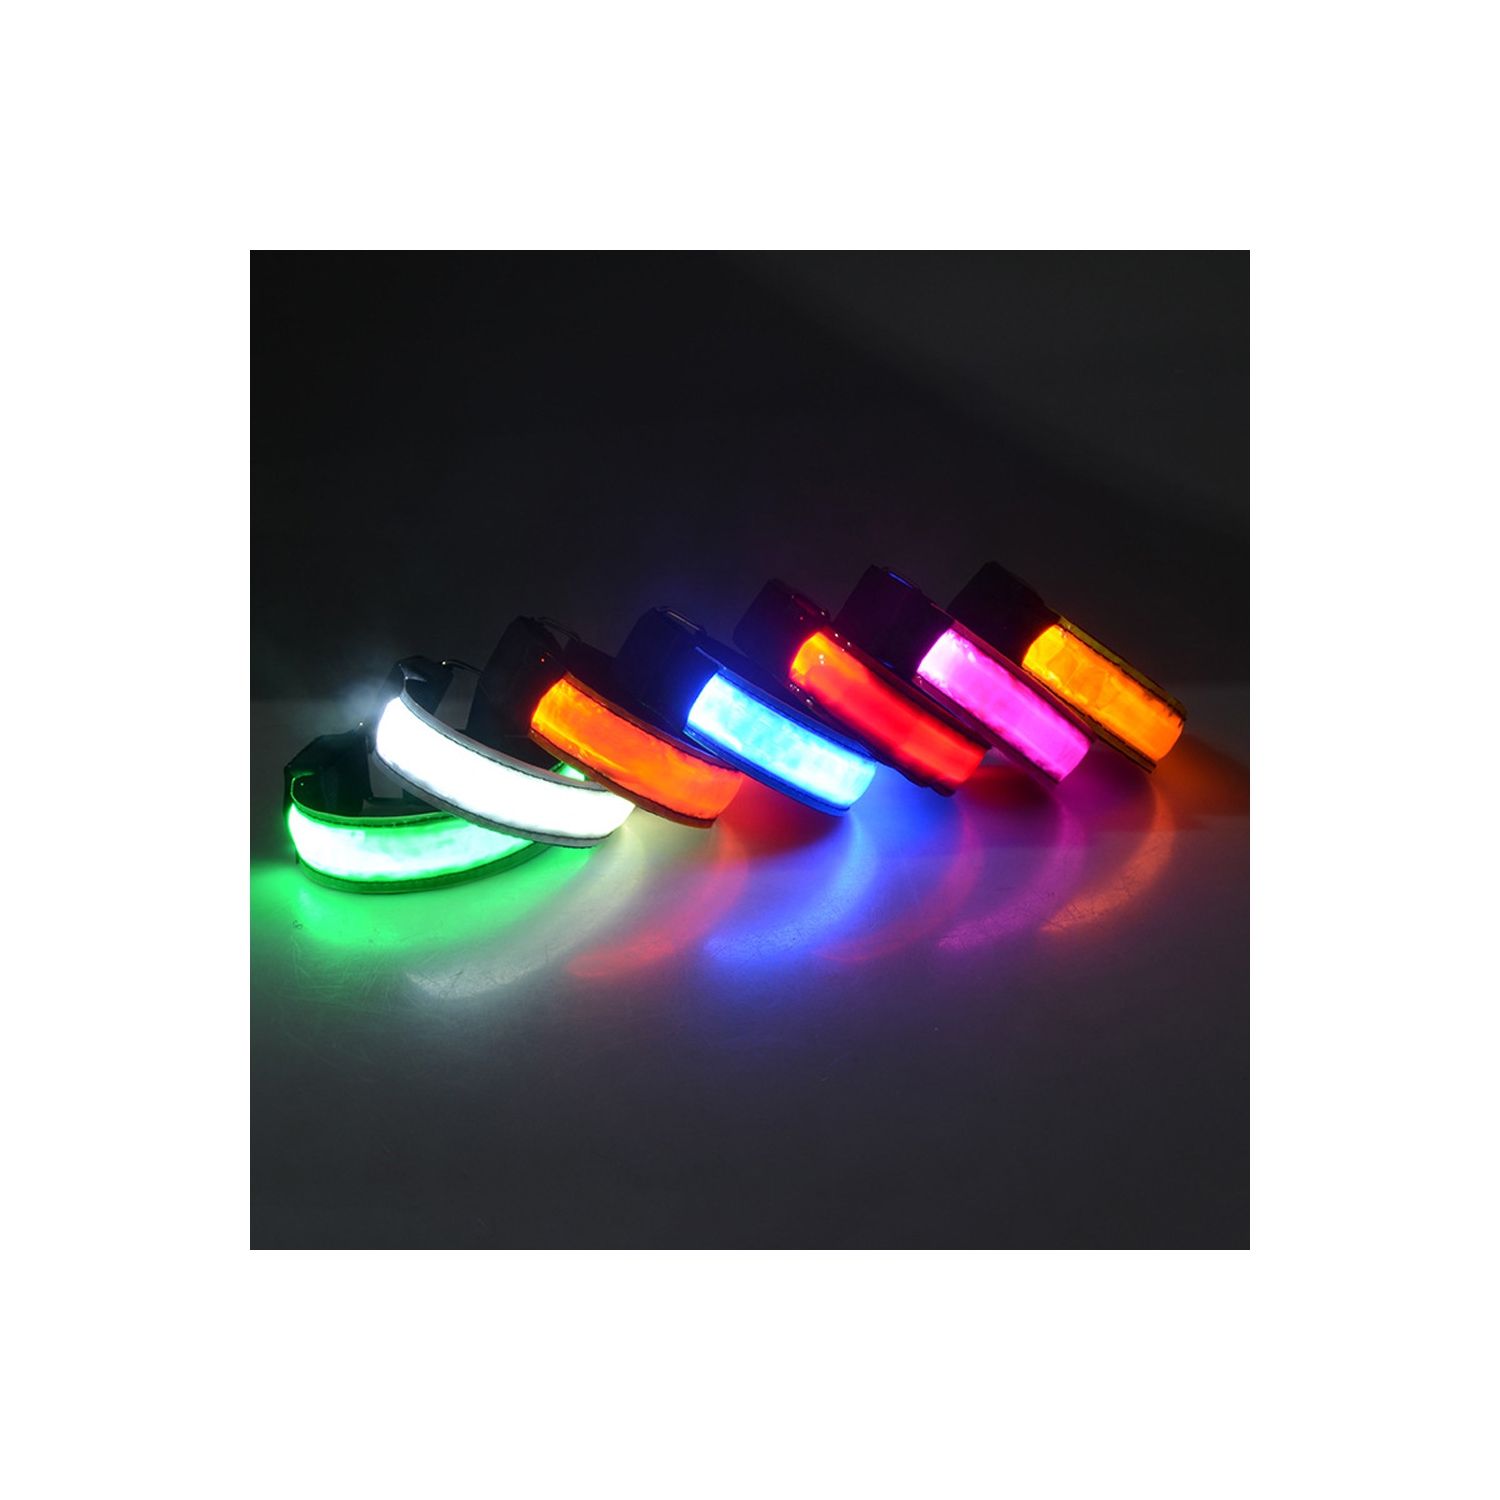 LED Armband Reflective Running Gear Bracelet Glow LED Light Band - axGear